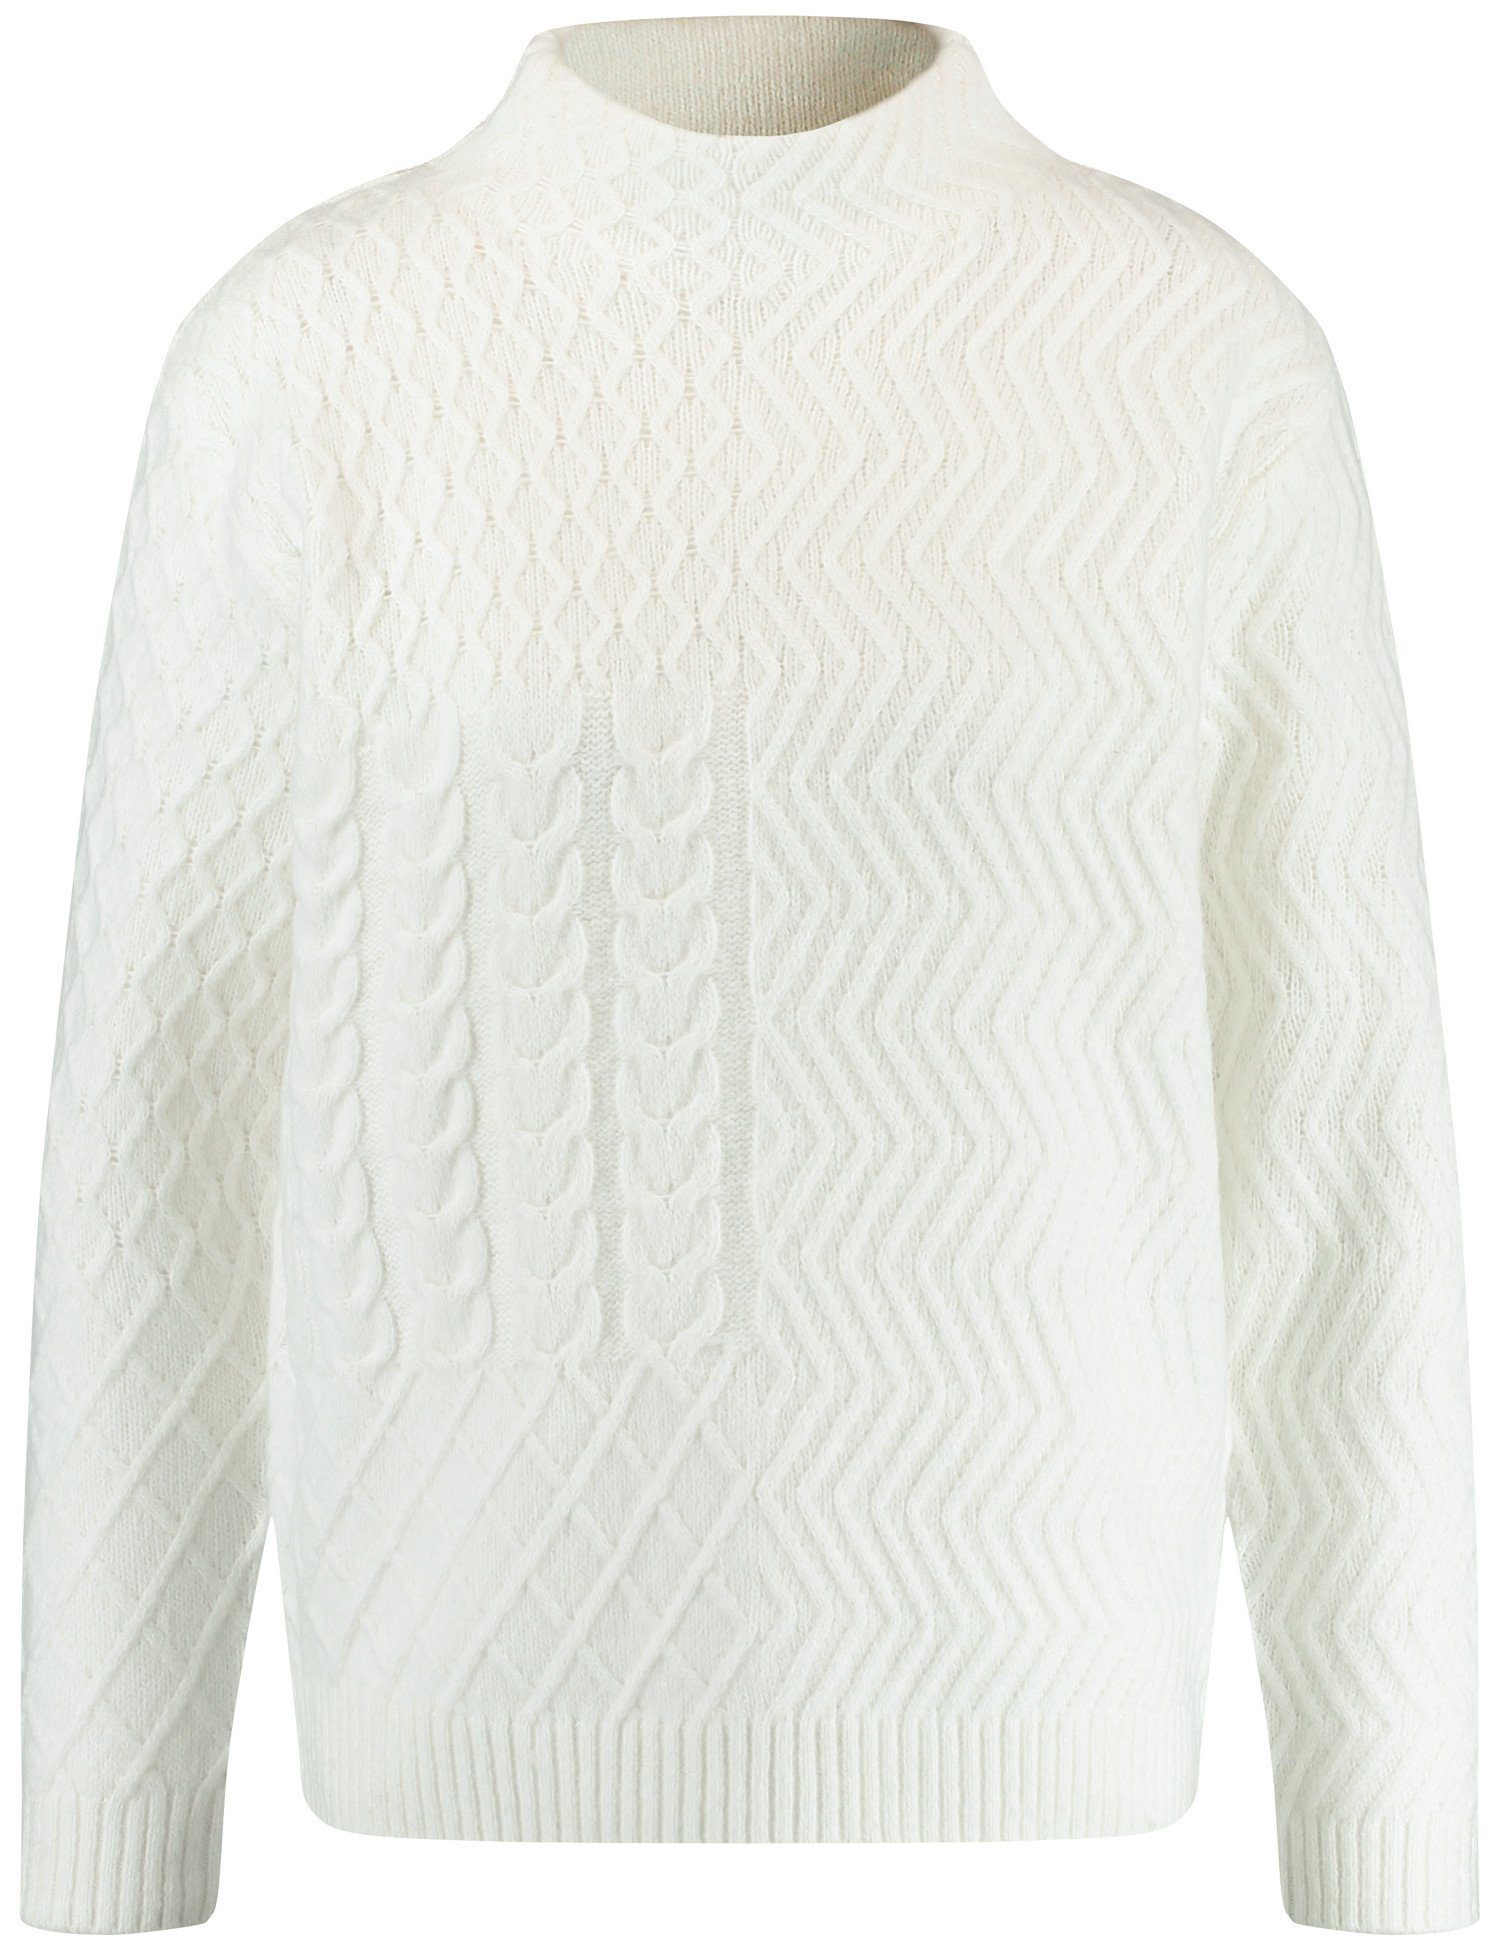 Strick-Muster Off-white GERRY und Turtleneck WEBER Rundhalspullover mit Pullover